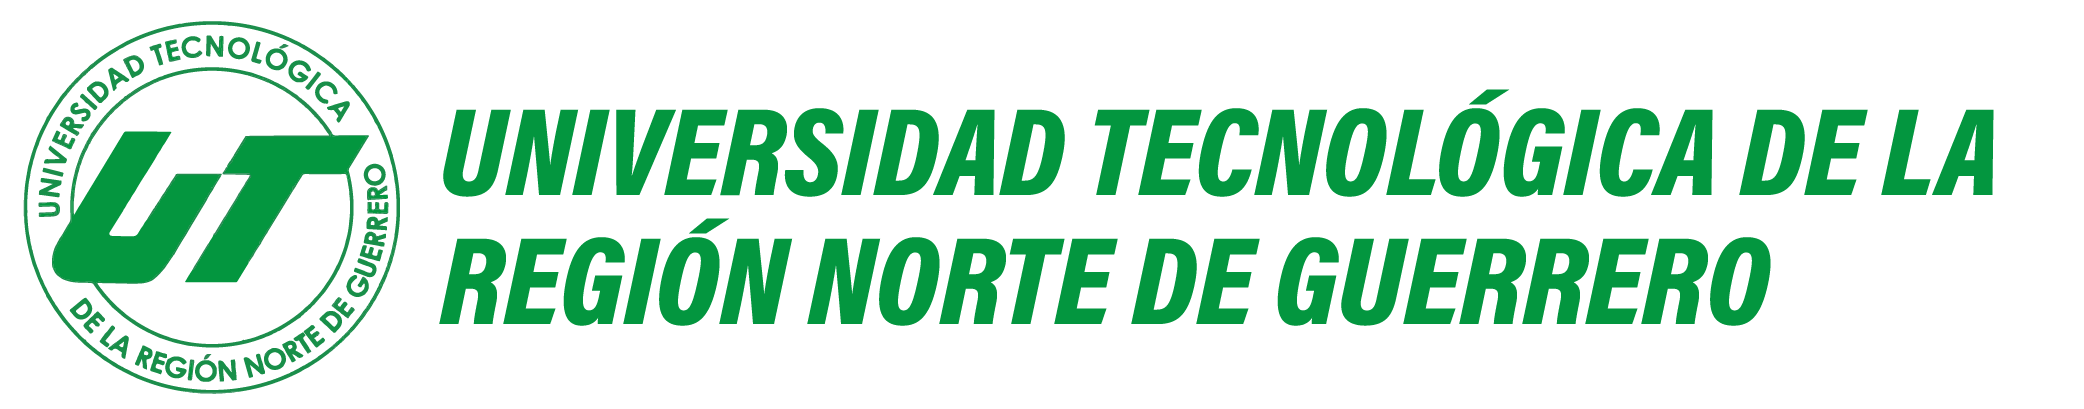 Universidad Tecnológica de la Región Norte de Guerrero